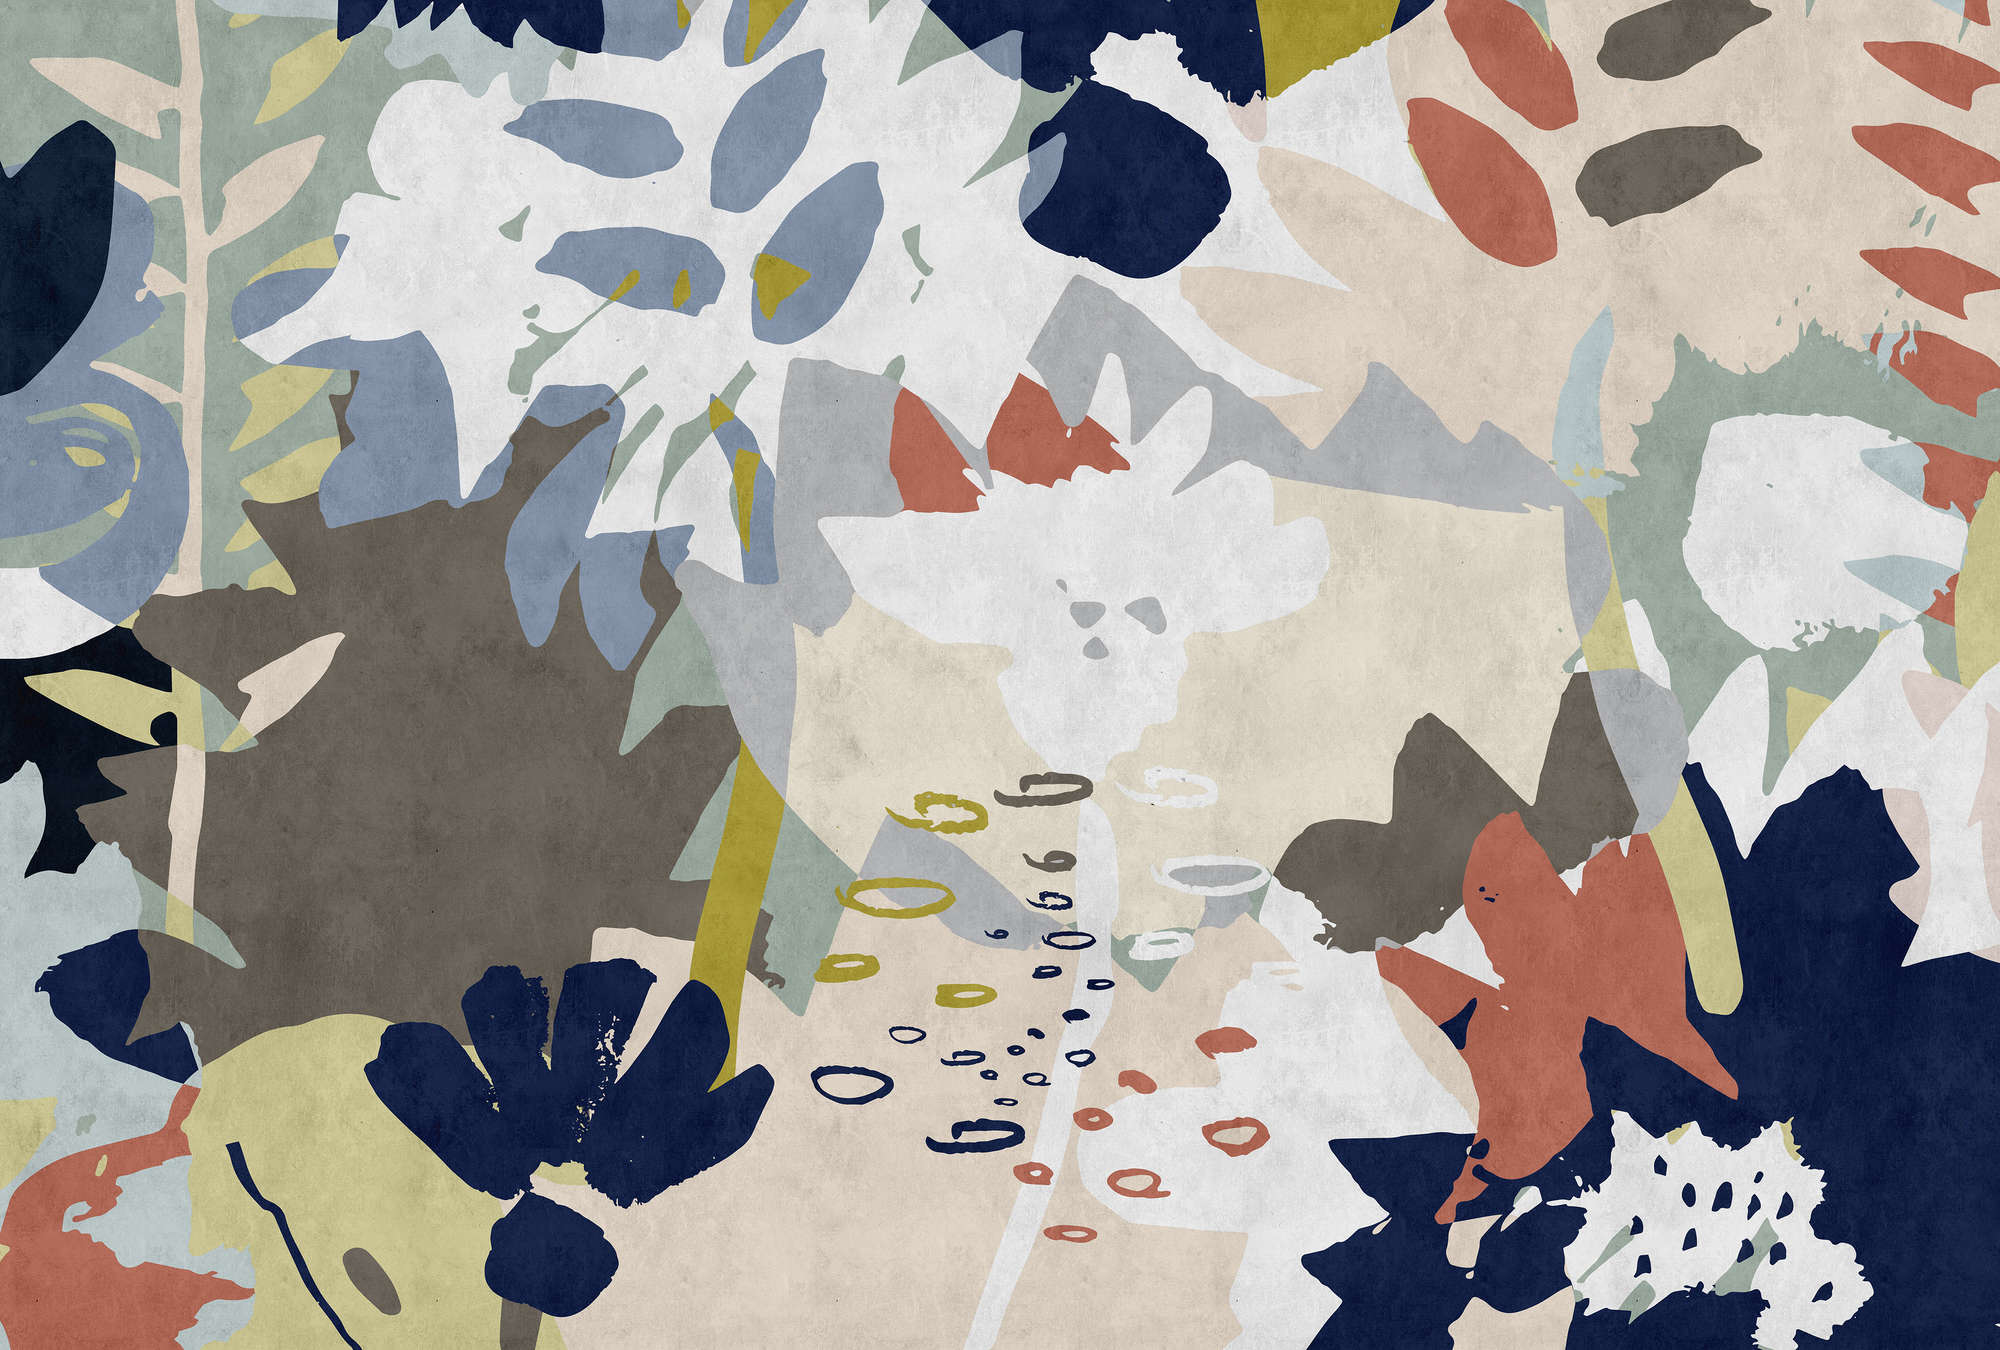             Floral Collage 4 - Digital behang met kleurrijk bladmotief - vloeipapierstructuur - Blauw, Bruin | Strukturenvlieseline
        